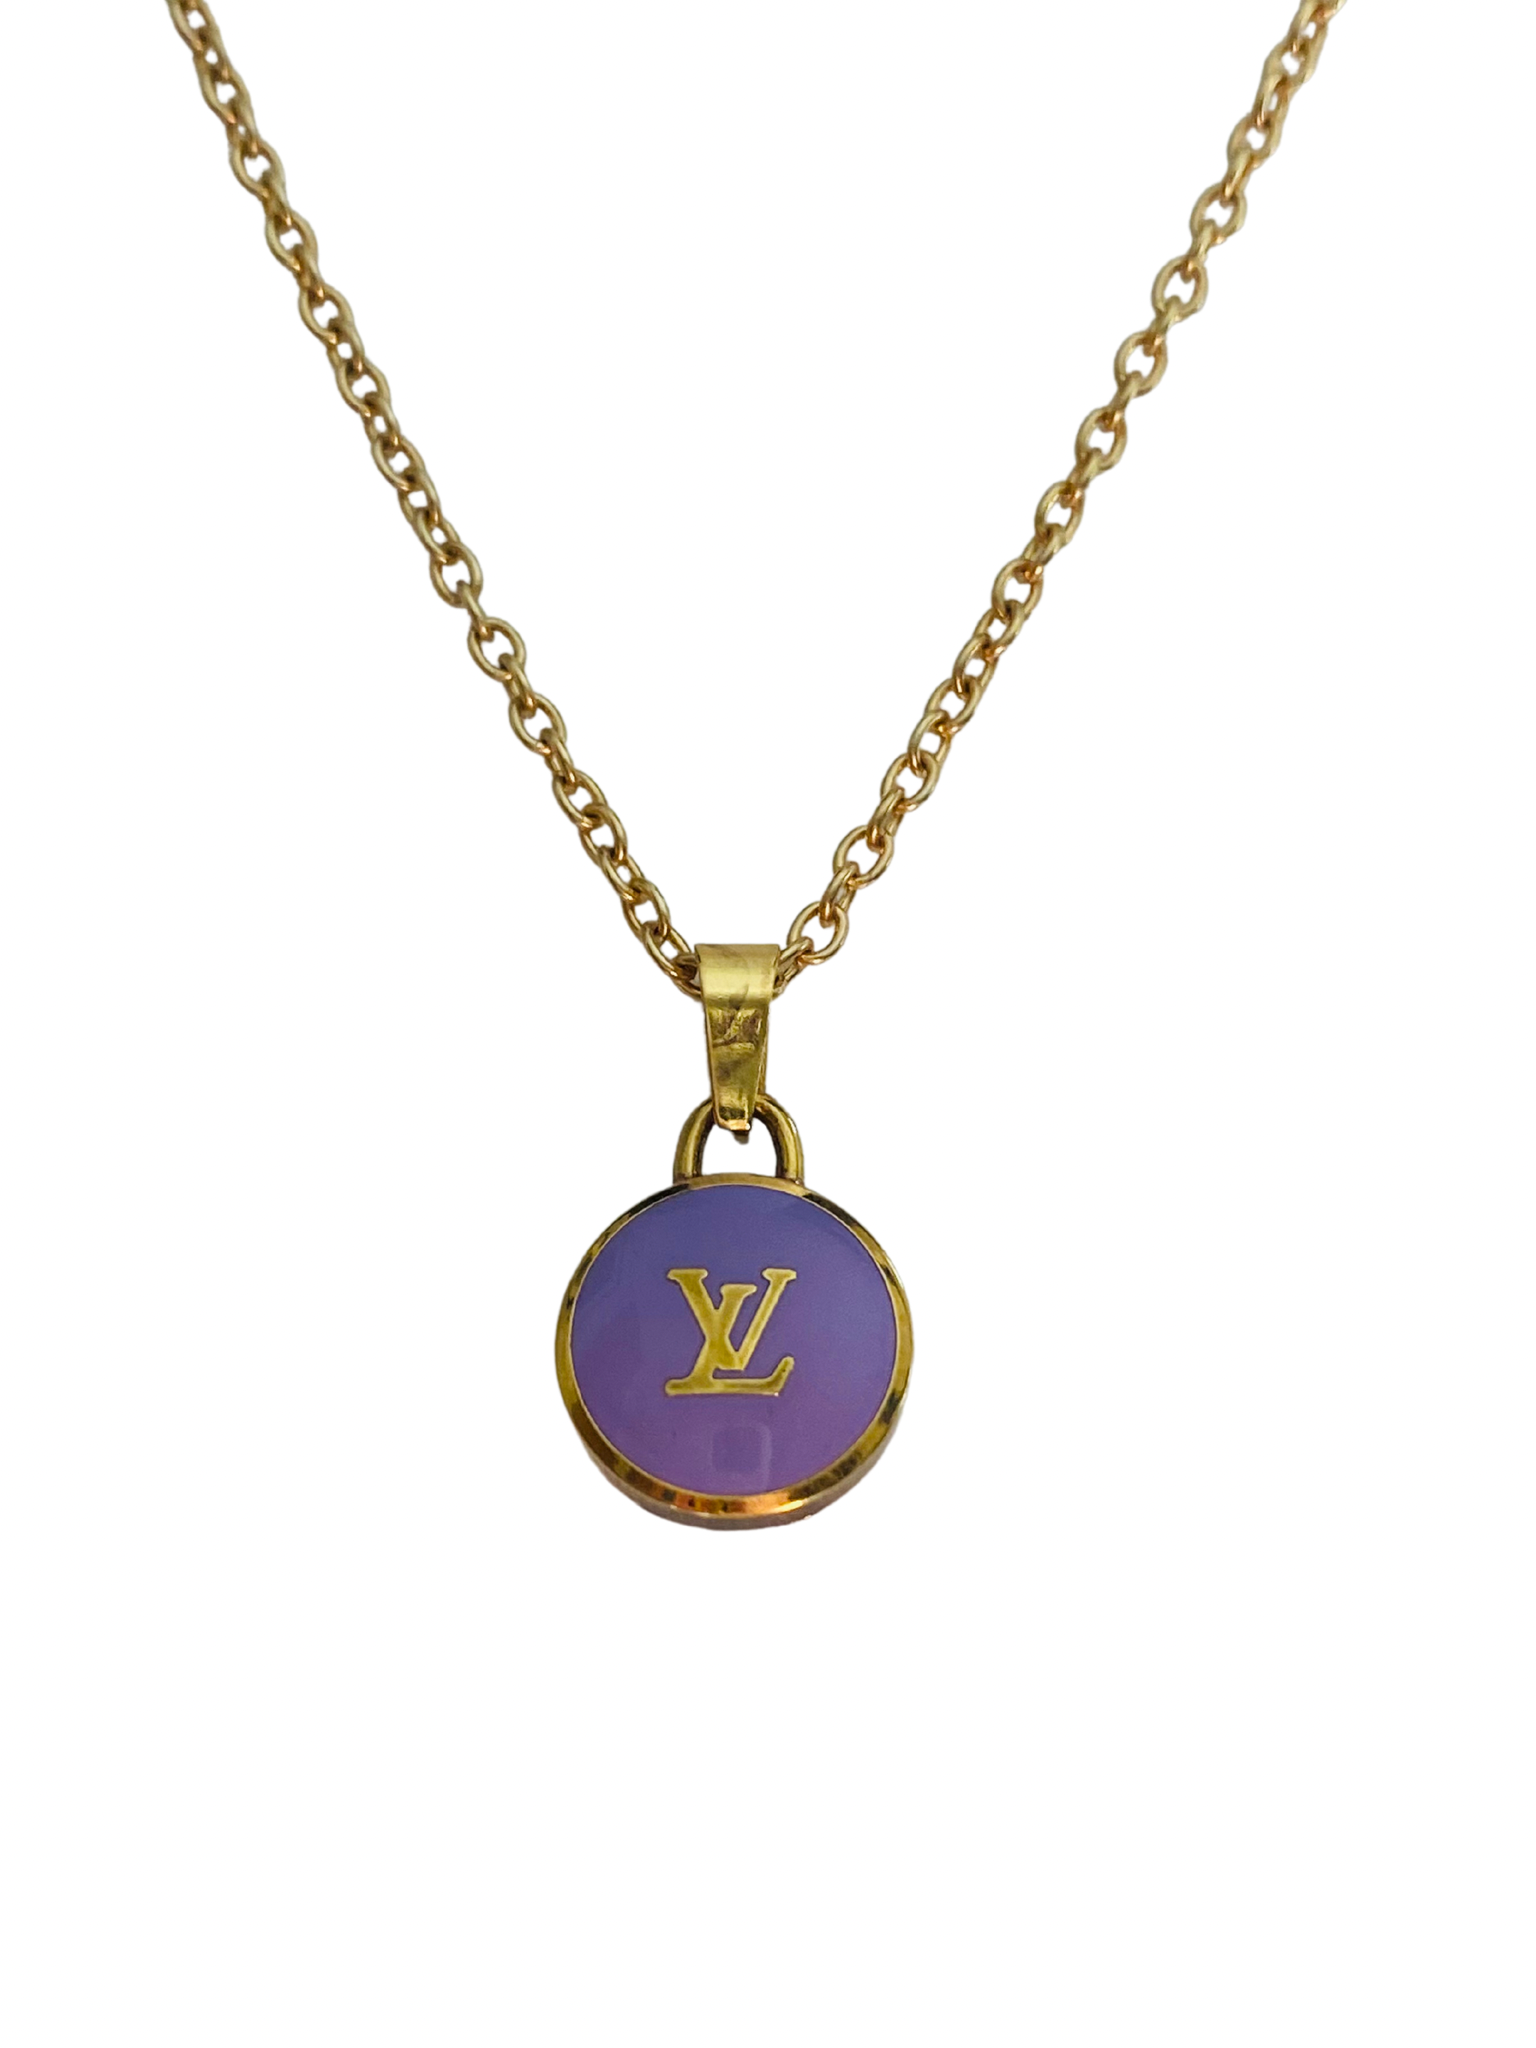 Louis Vuitton logo pendant with bail 3D model 3D printable